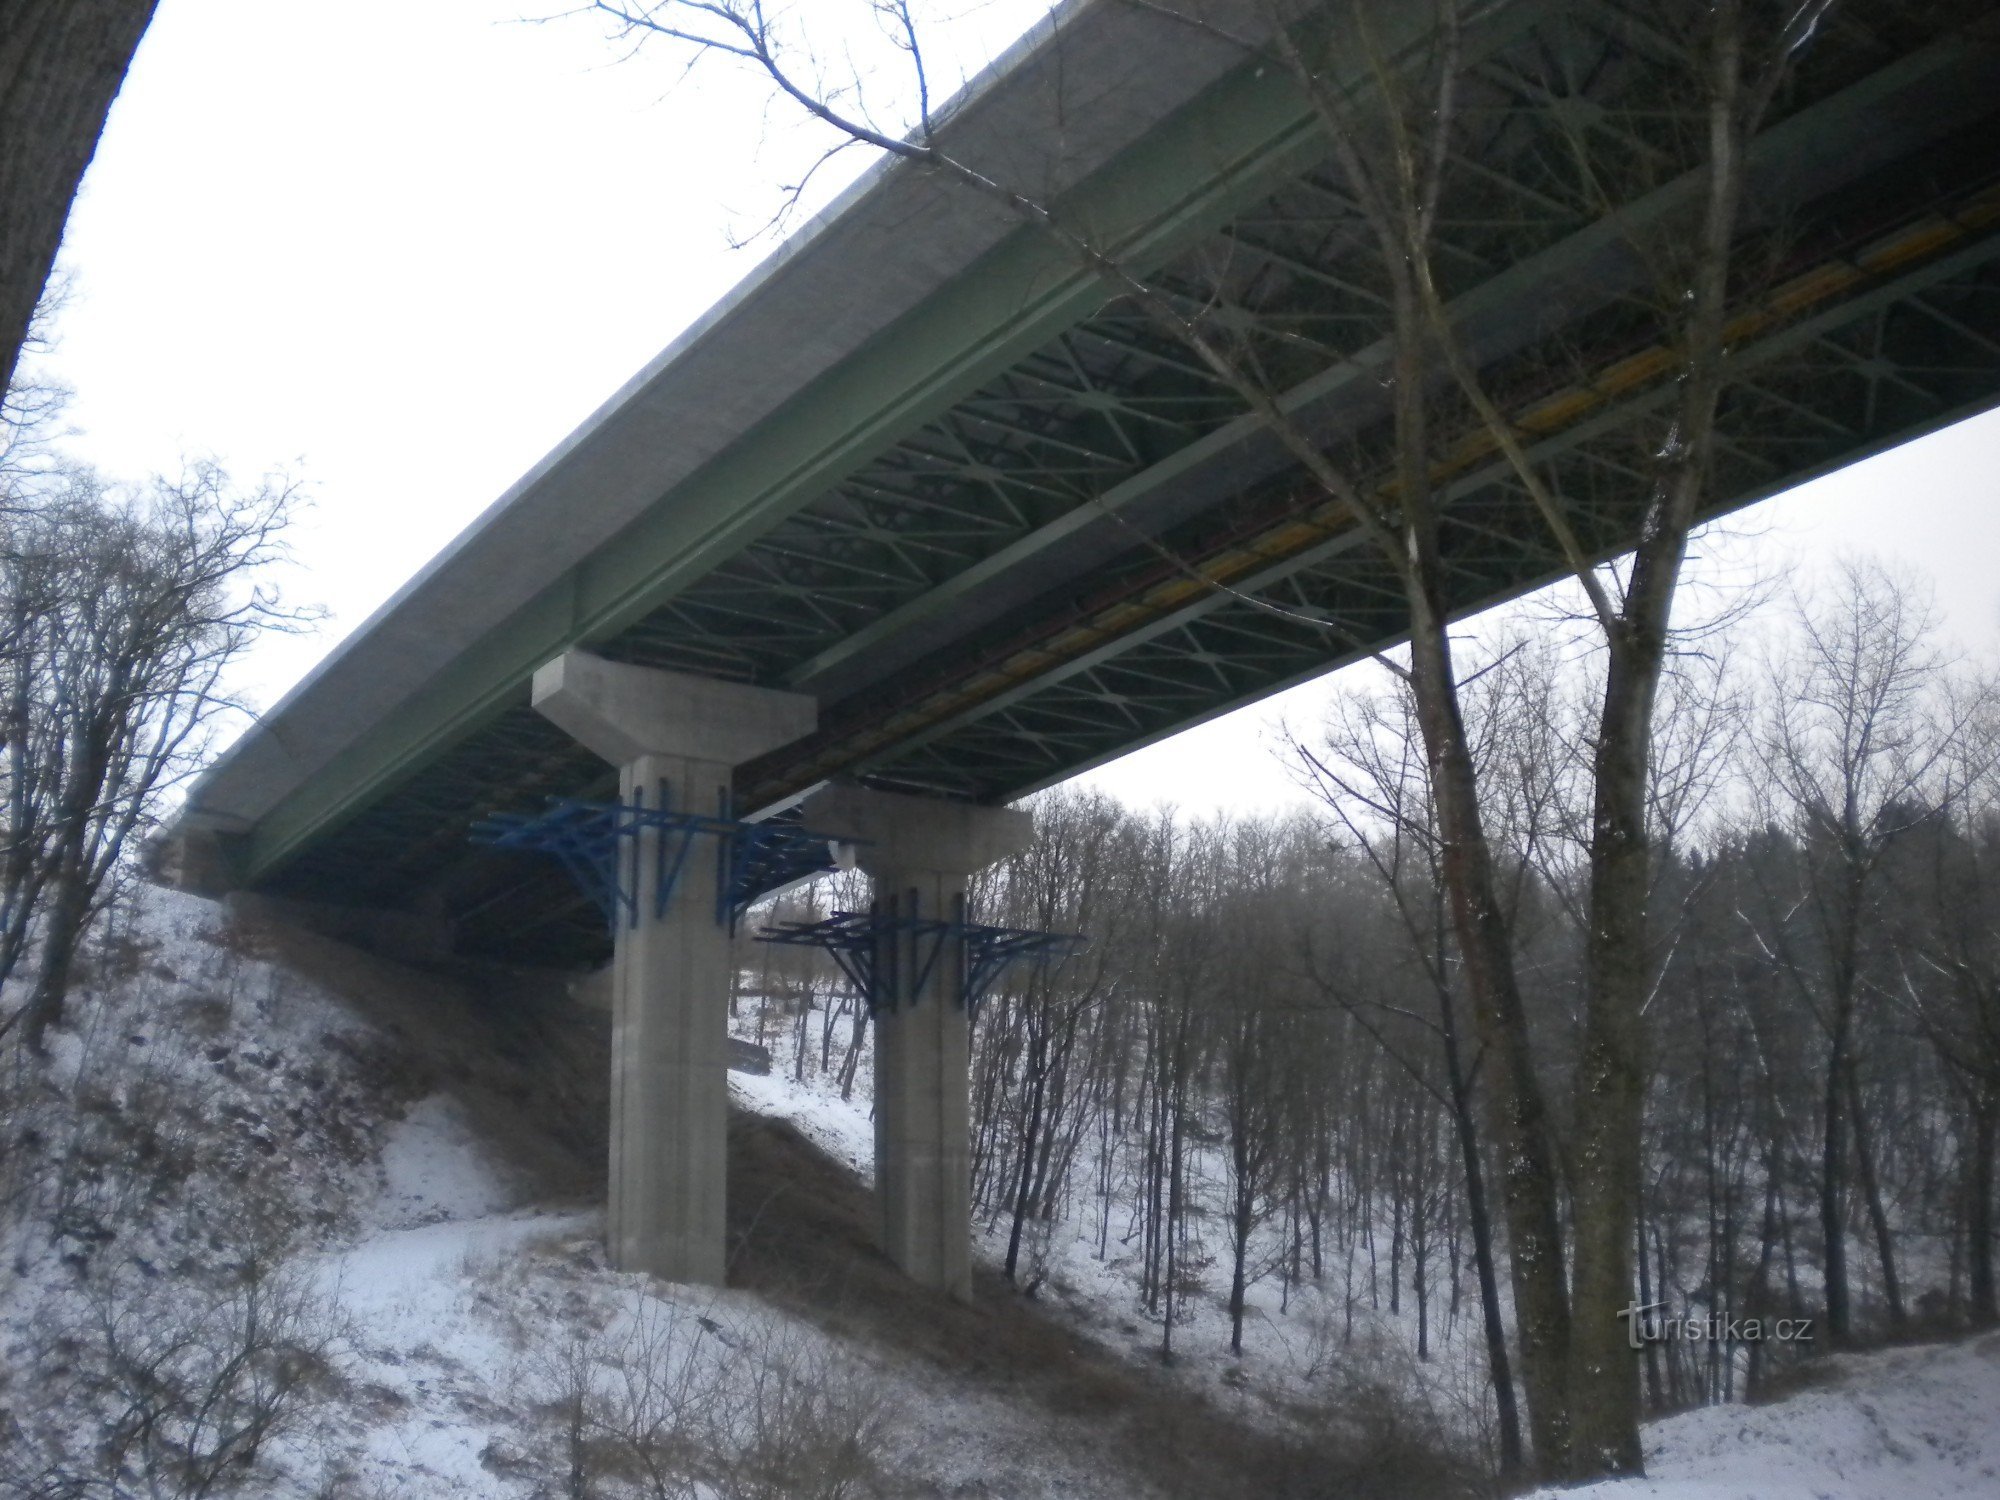 manjši avtocestni most čez dolino.